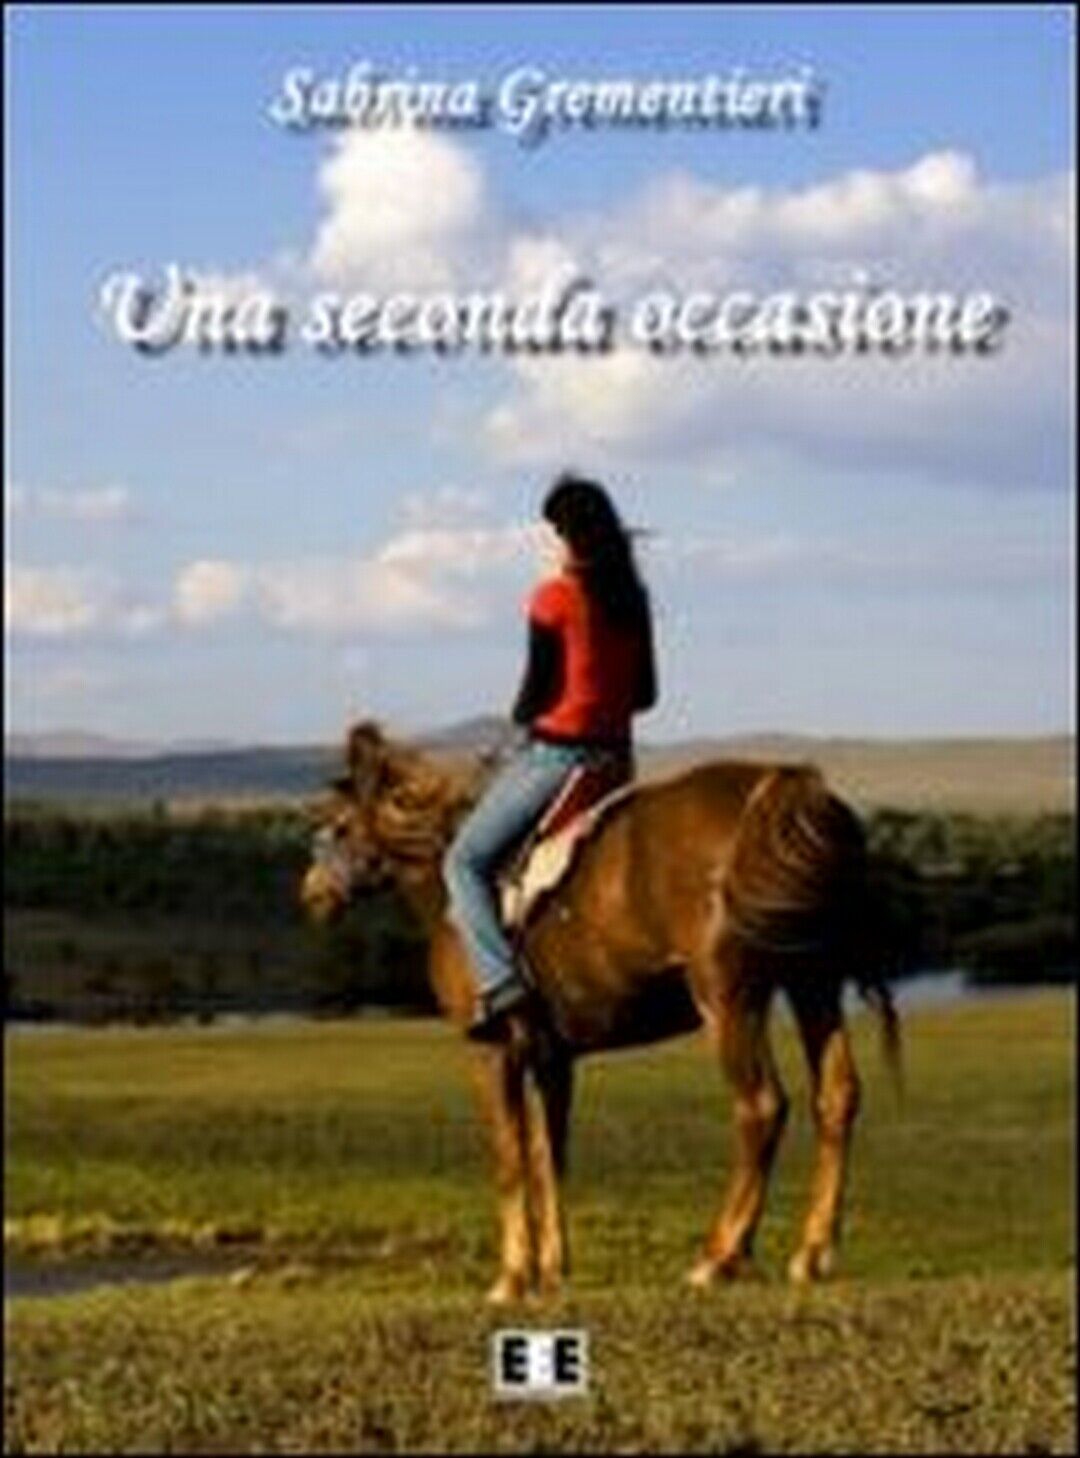 Una seconda occasione  di Sabrina Grementieri,  2013,  Eee-edizioni Esordienti libro usato